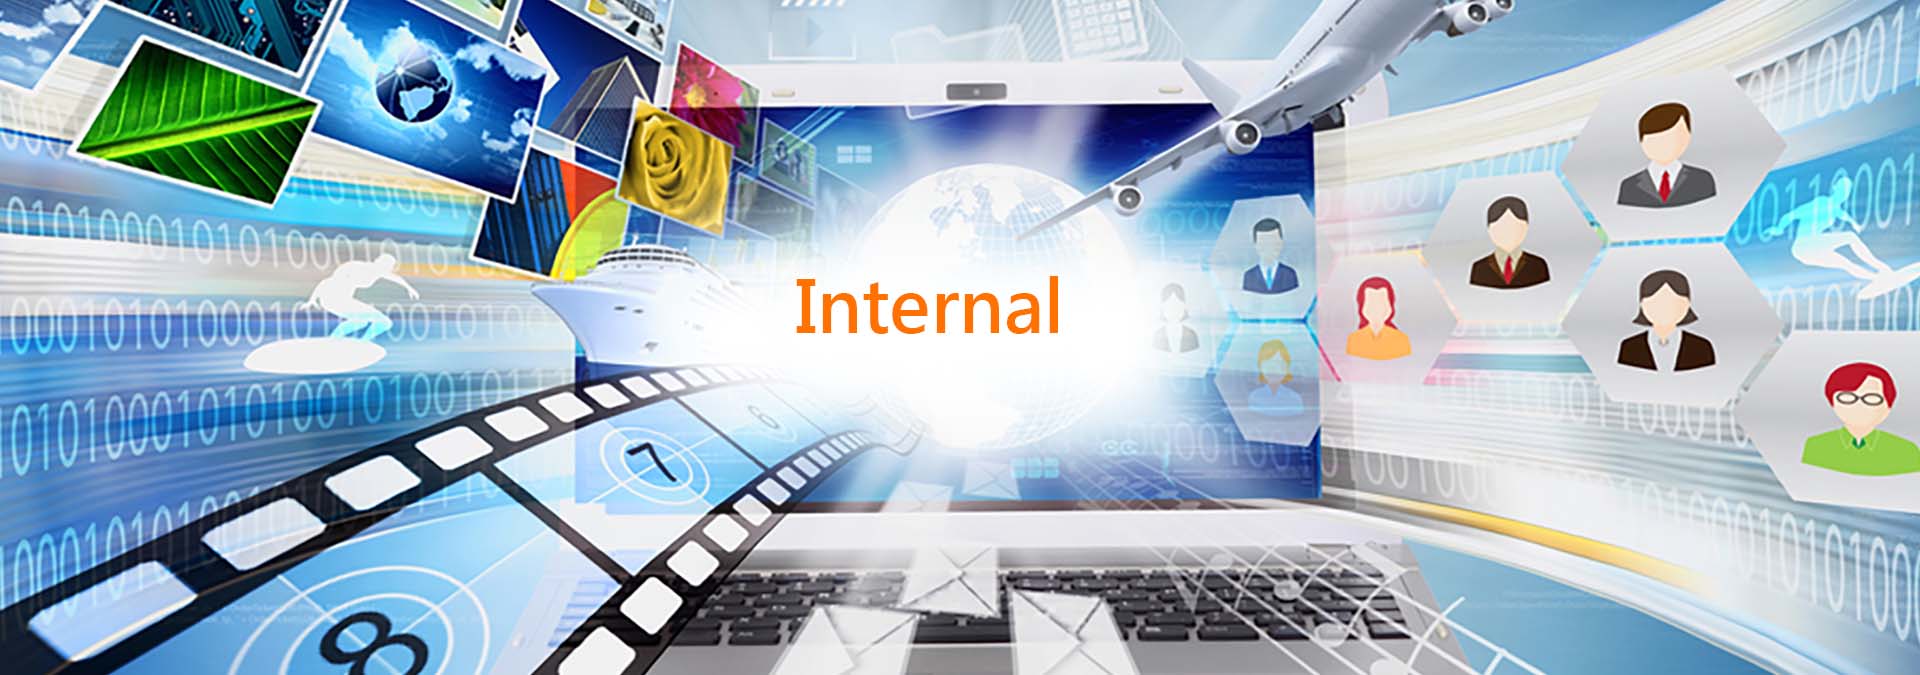 Internal｜kimWell Electronics International